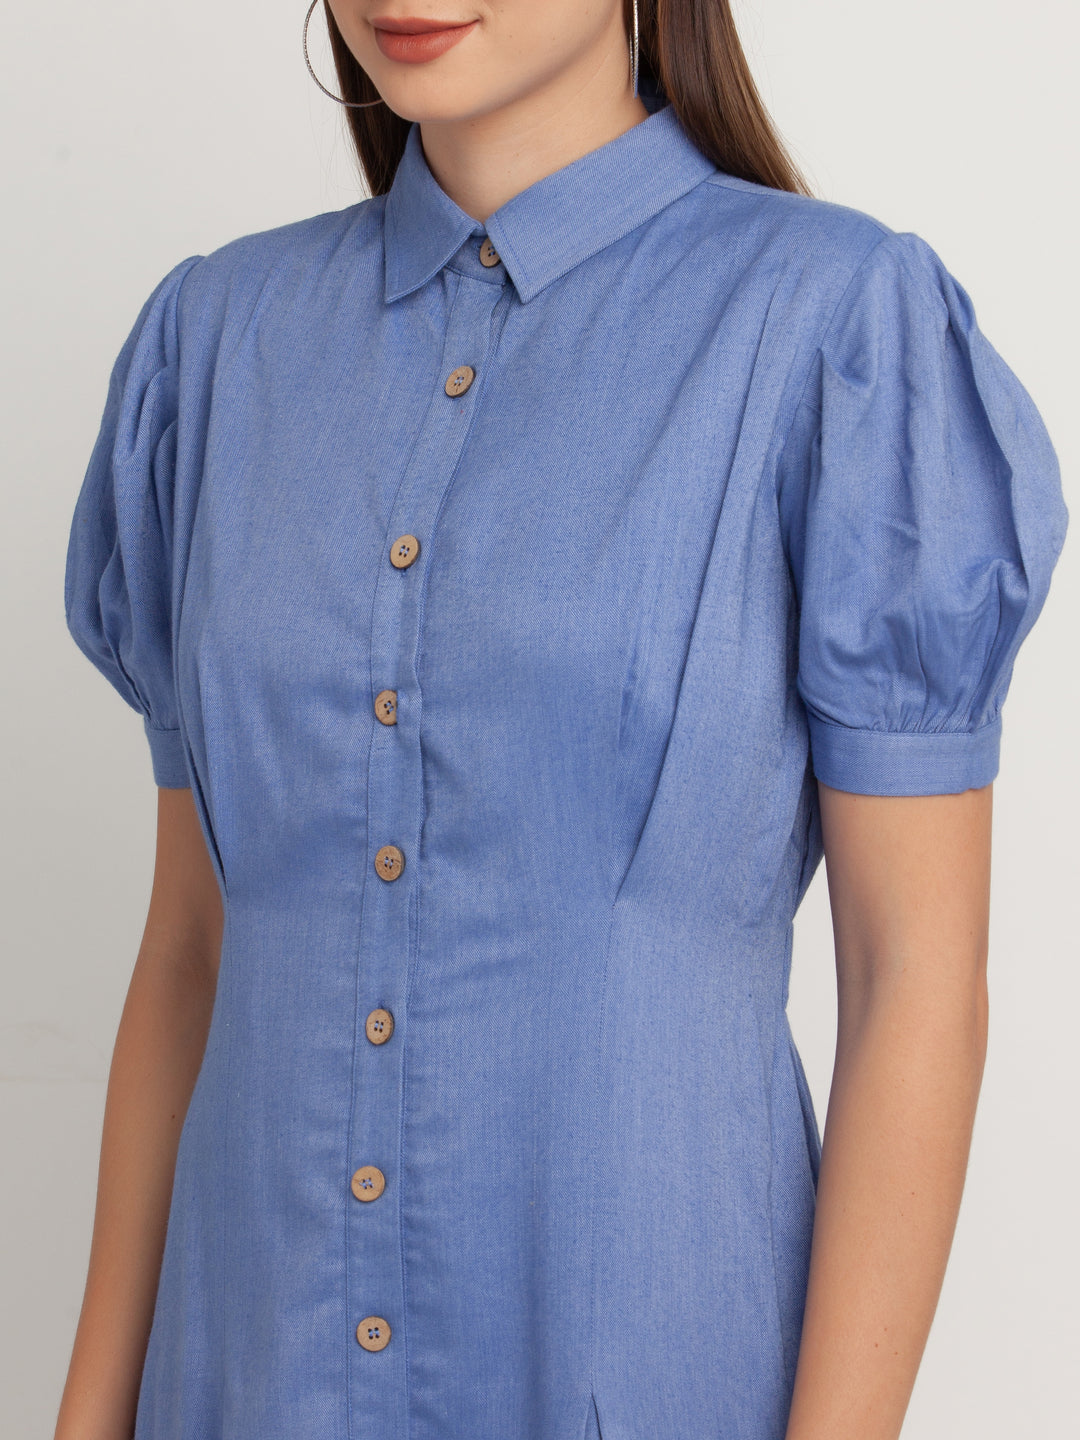 Blue Solid Shirt Dress For Women